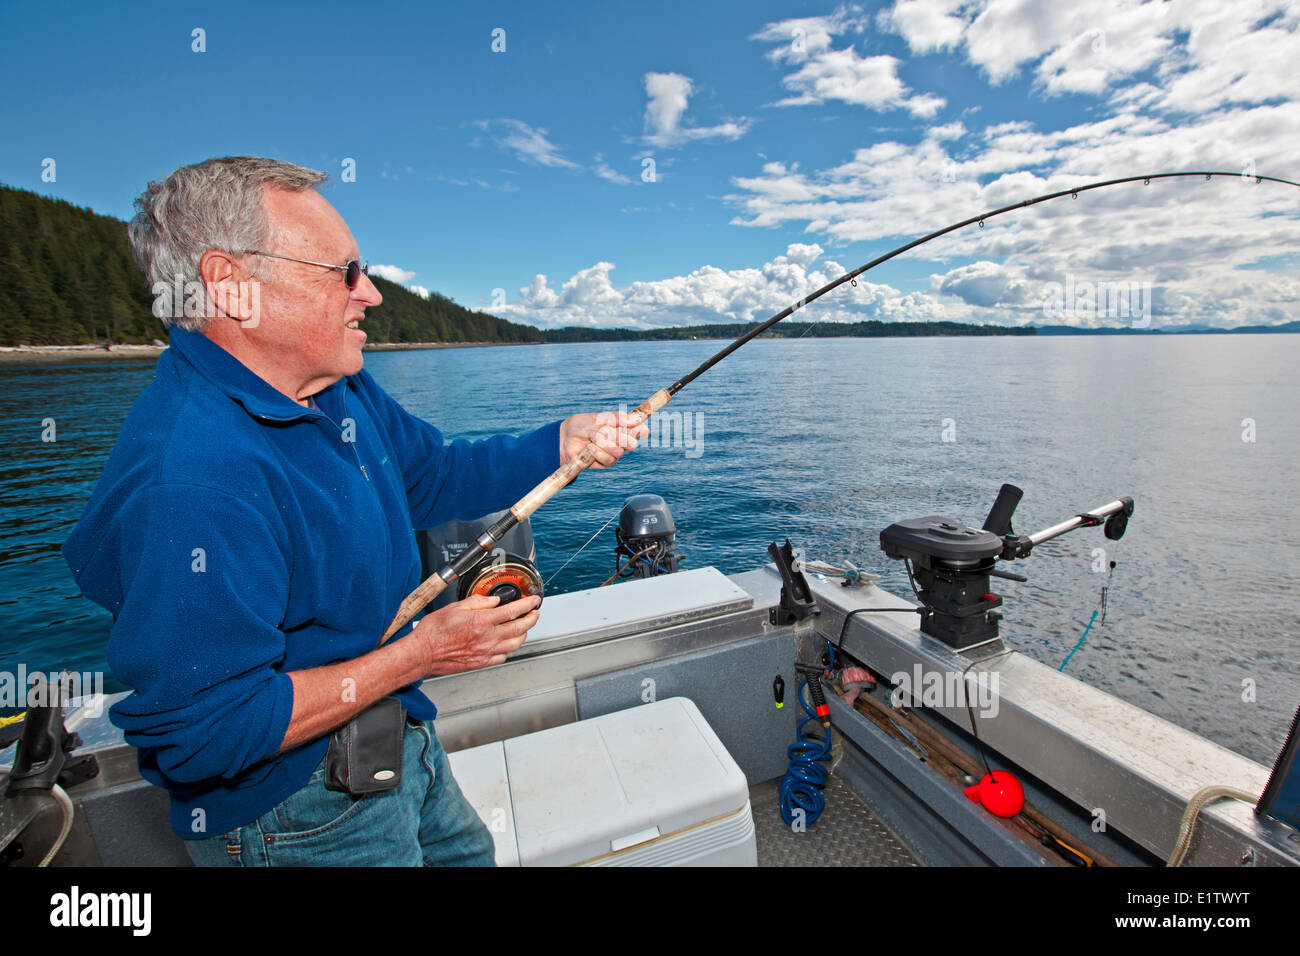 Retraite Senior homme pêcher avec la canne à pêche dans ses mains au large du nord de l'île de Vancouver en Colombie-Britannique, Canada. Banque D'Images